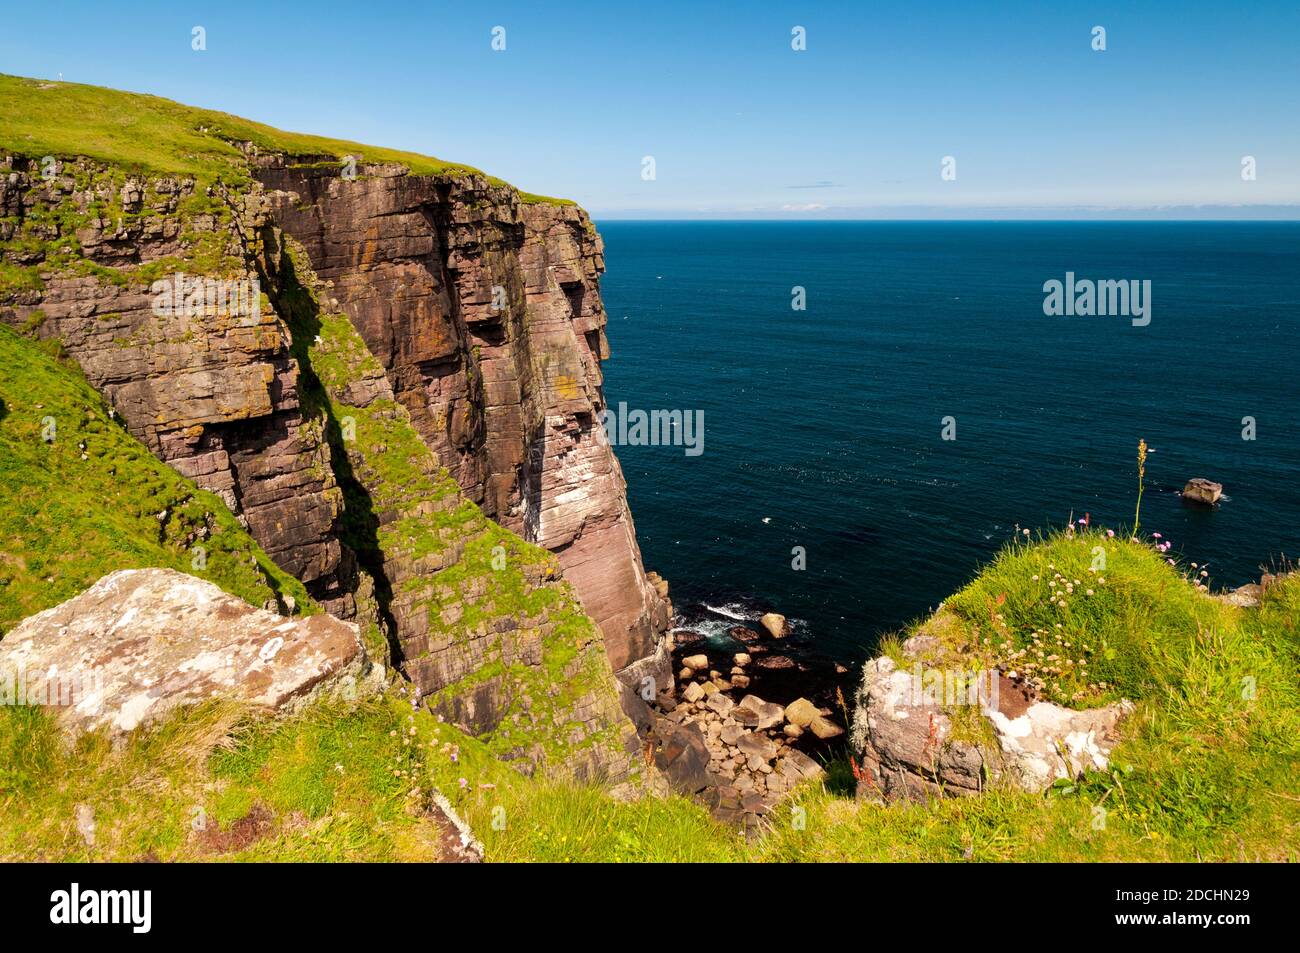 Meeresklippen auf der Insel Handa vor der Nordwestküste Schottlands. Juni. Stockfoto